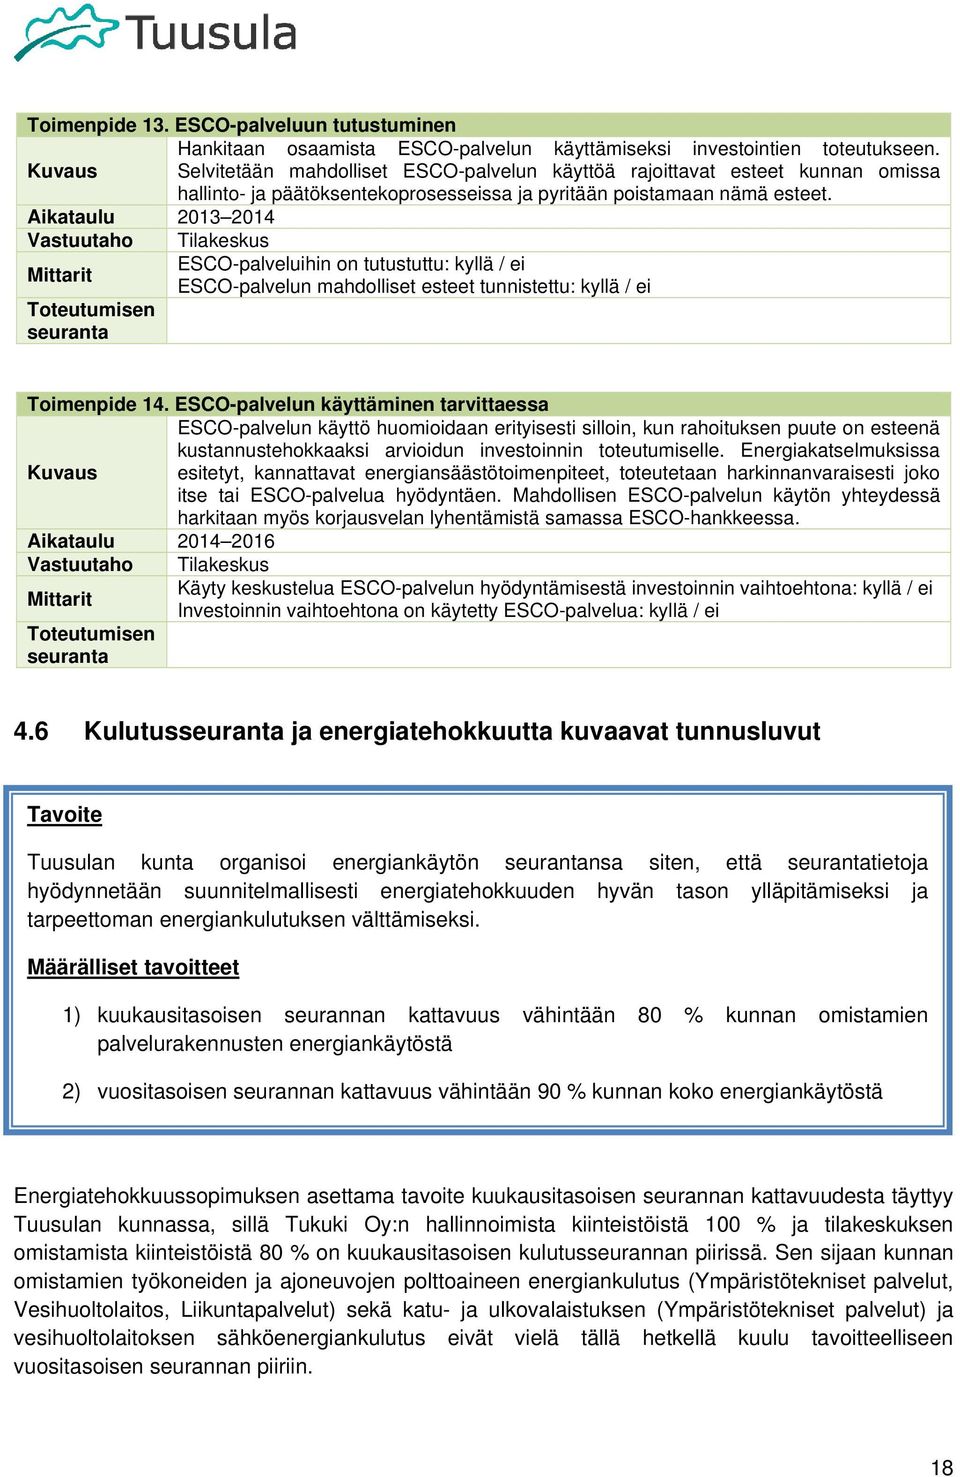 Aikataulu 2013 2014 Vastuutaho Tilakeskus Mittarit ESCO-palveluihin on tutustuttu: kyllä / ei ESCO-palvelun mahdolliset esteet tunnistettu: kyllä / ei Toimenpide 14.